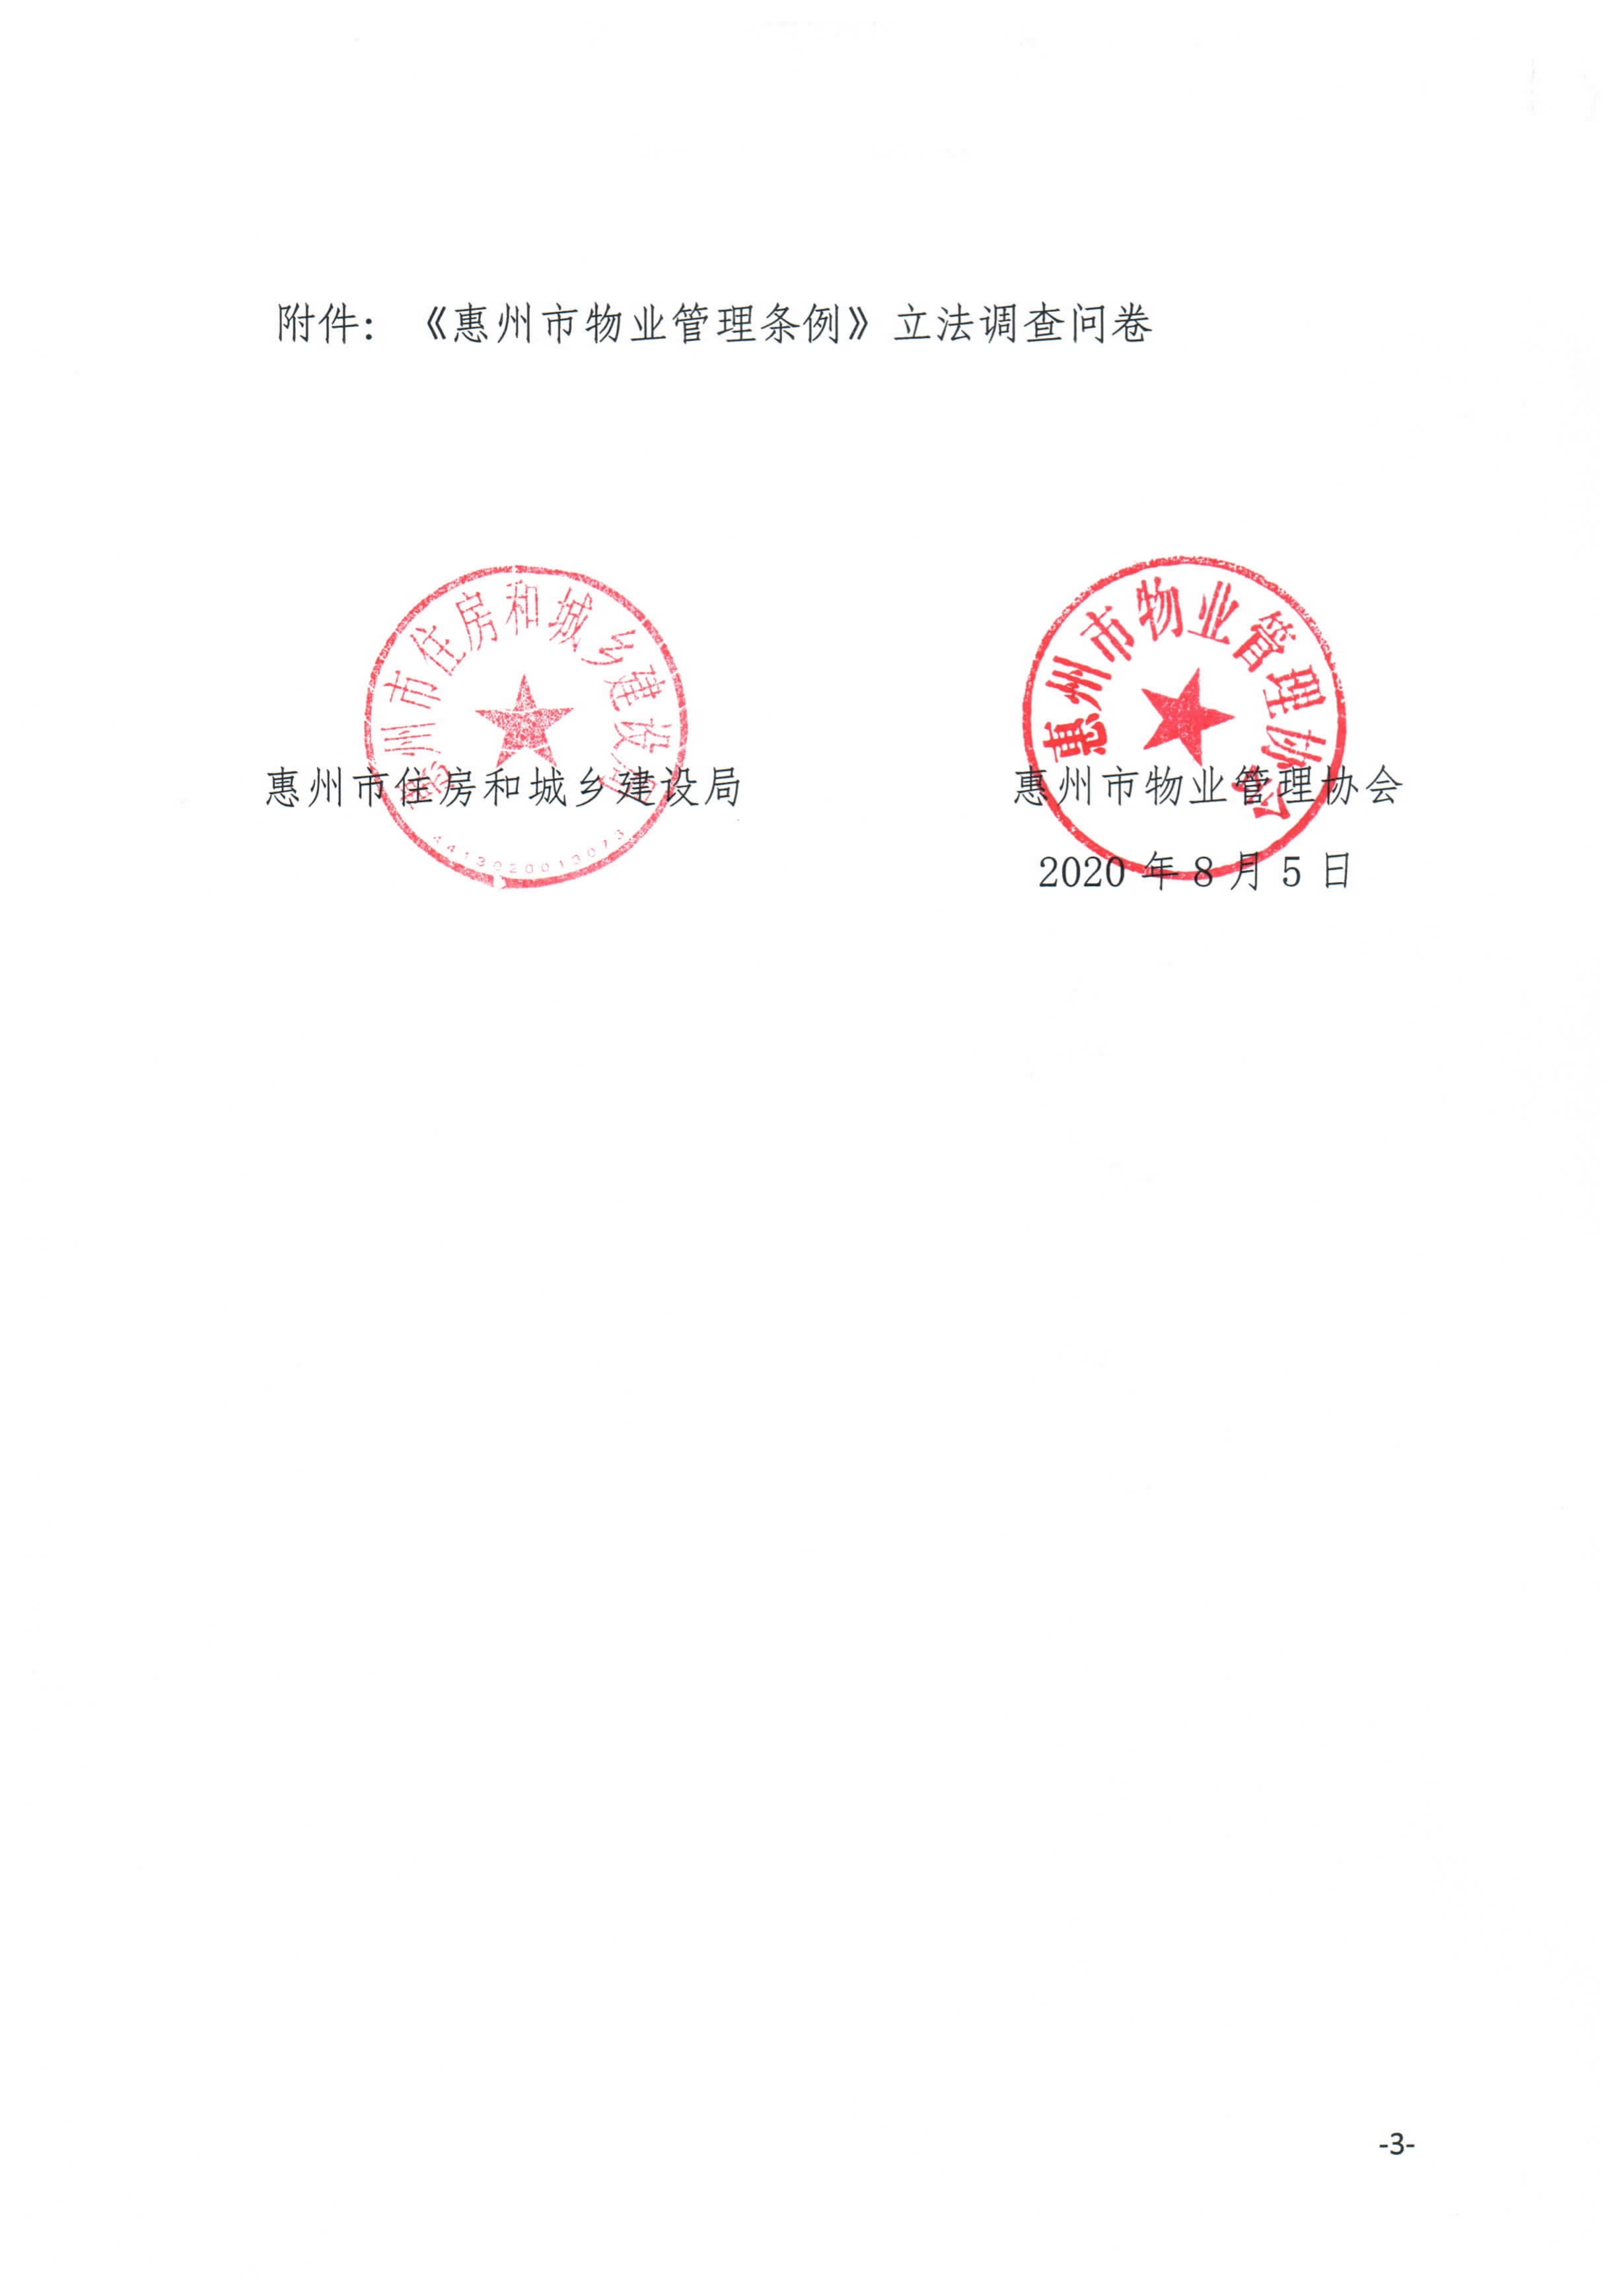 关于开展《惠州市物业管理条例》立法问卷调查的通知_3.jpg